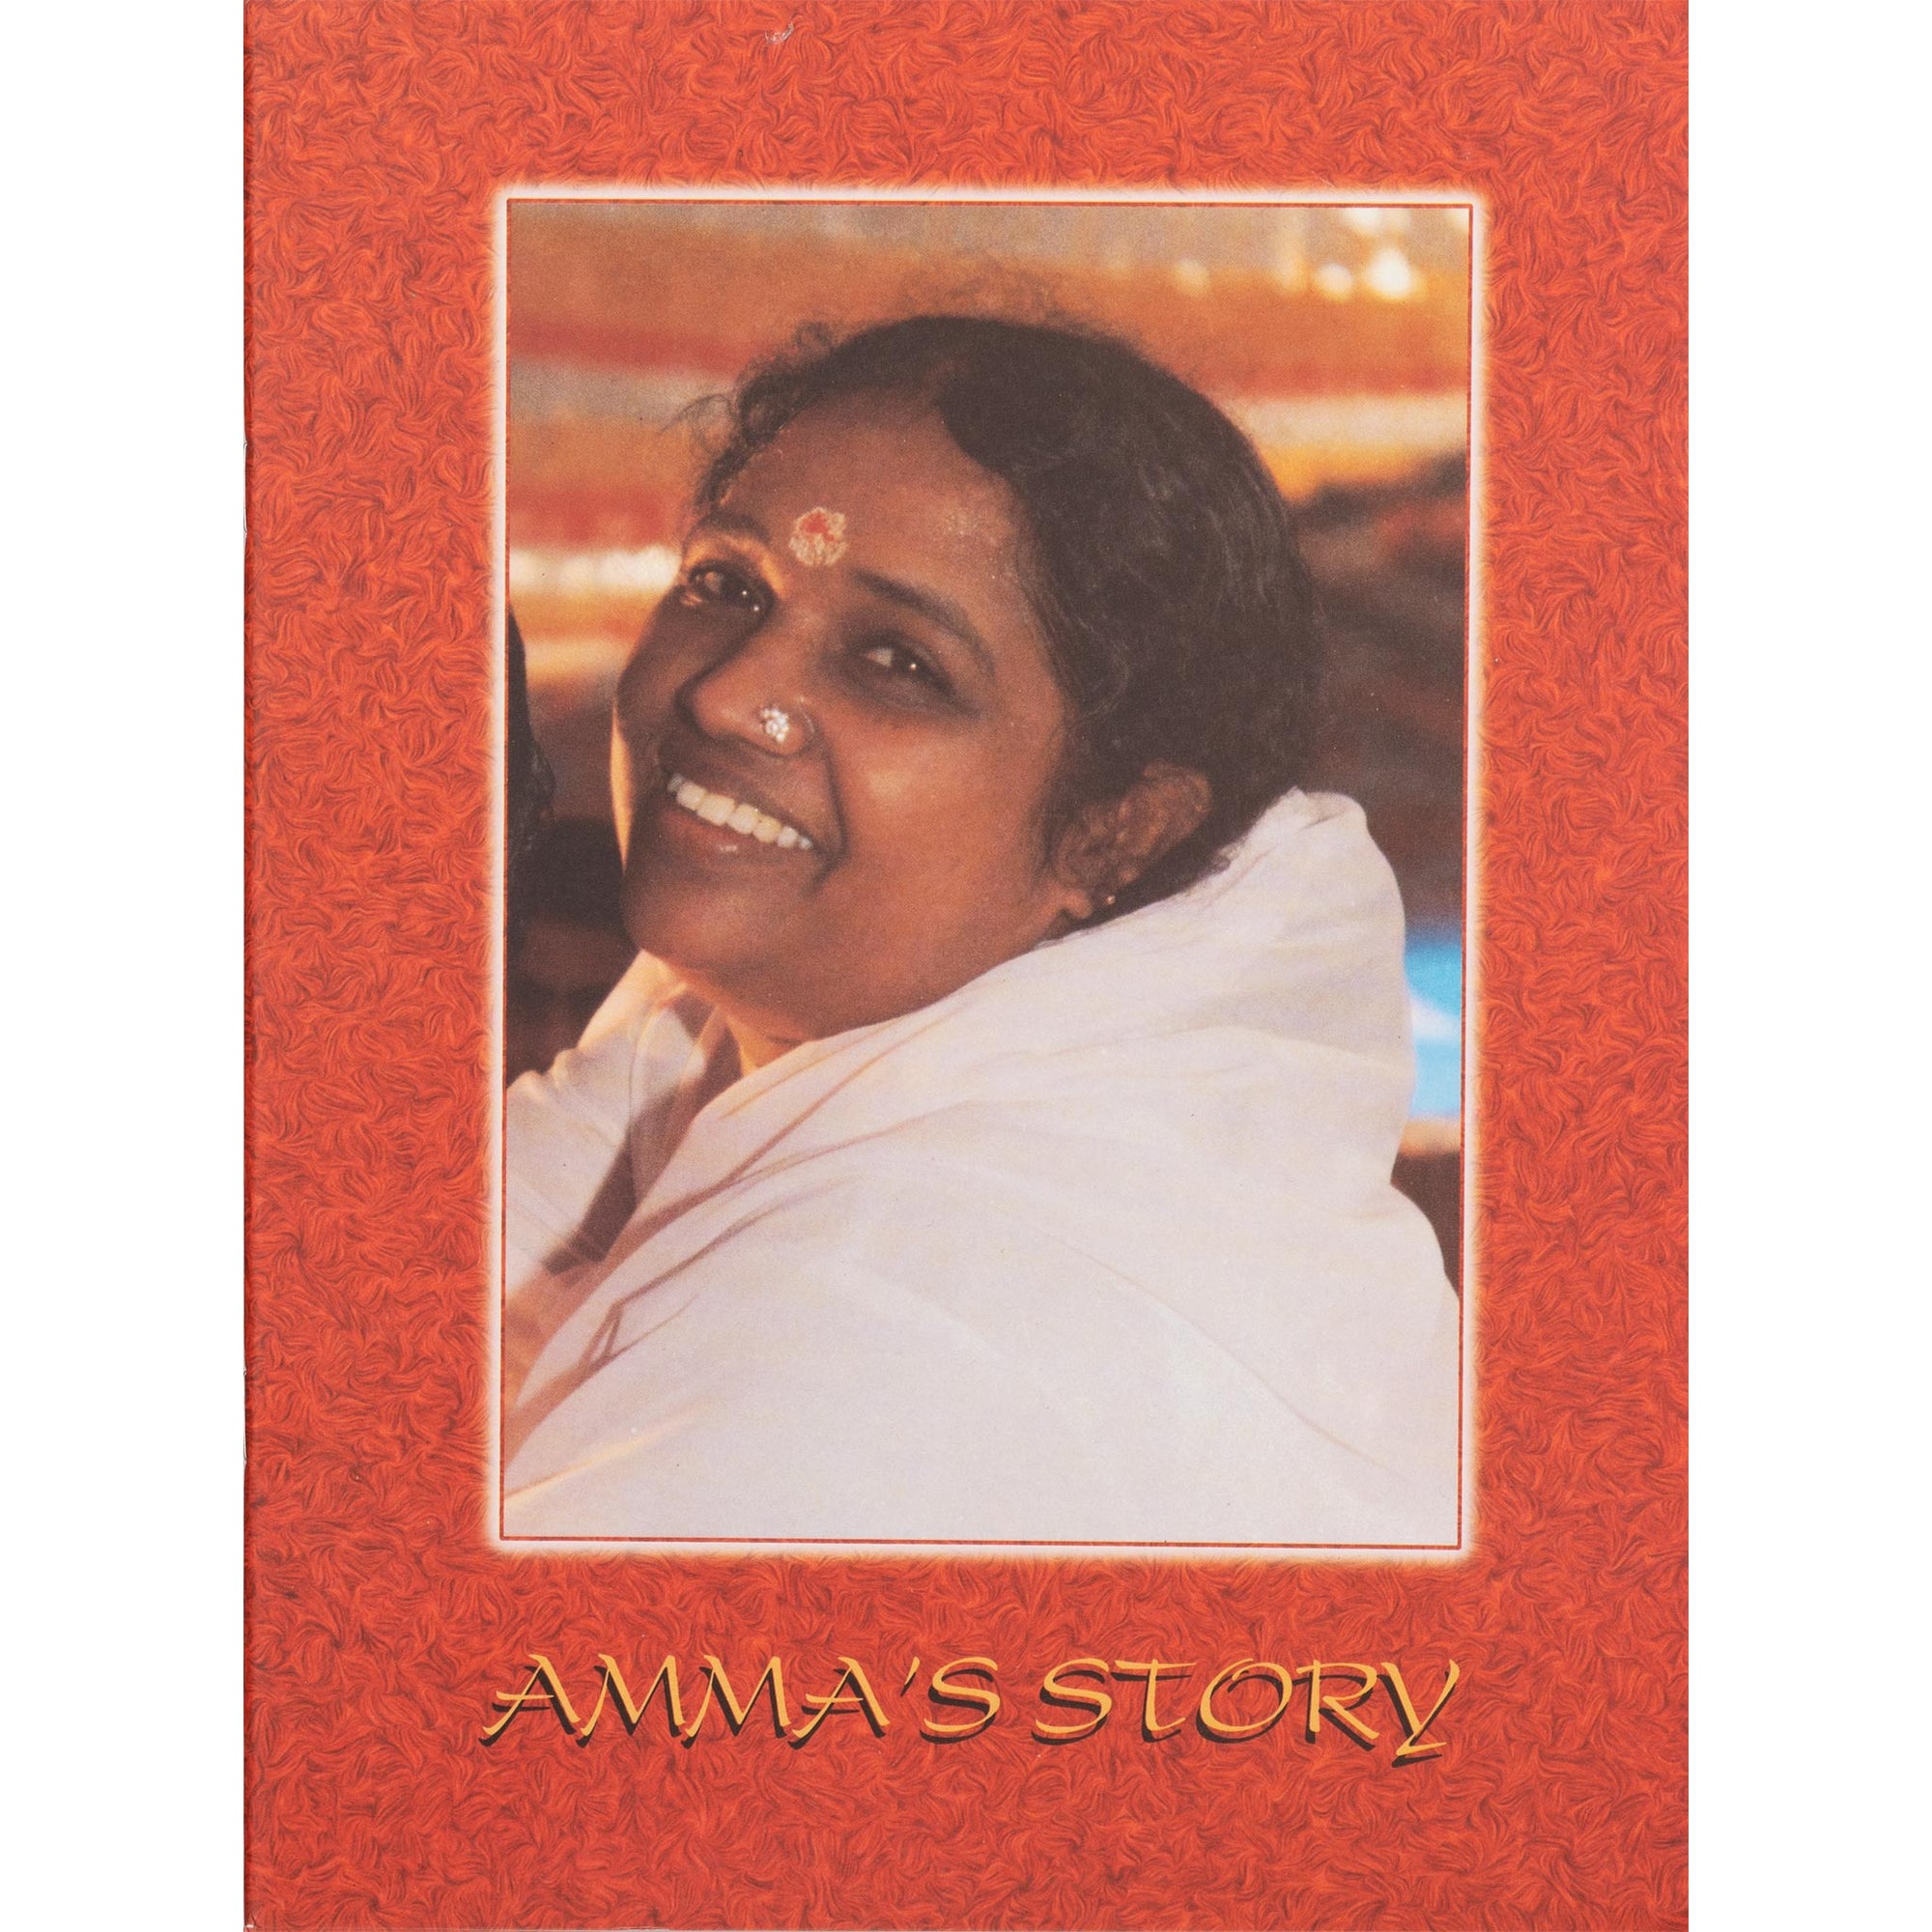 Amma's Story